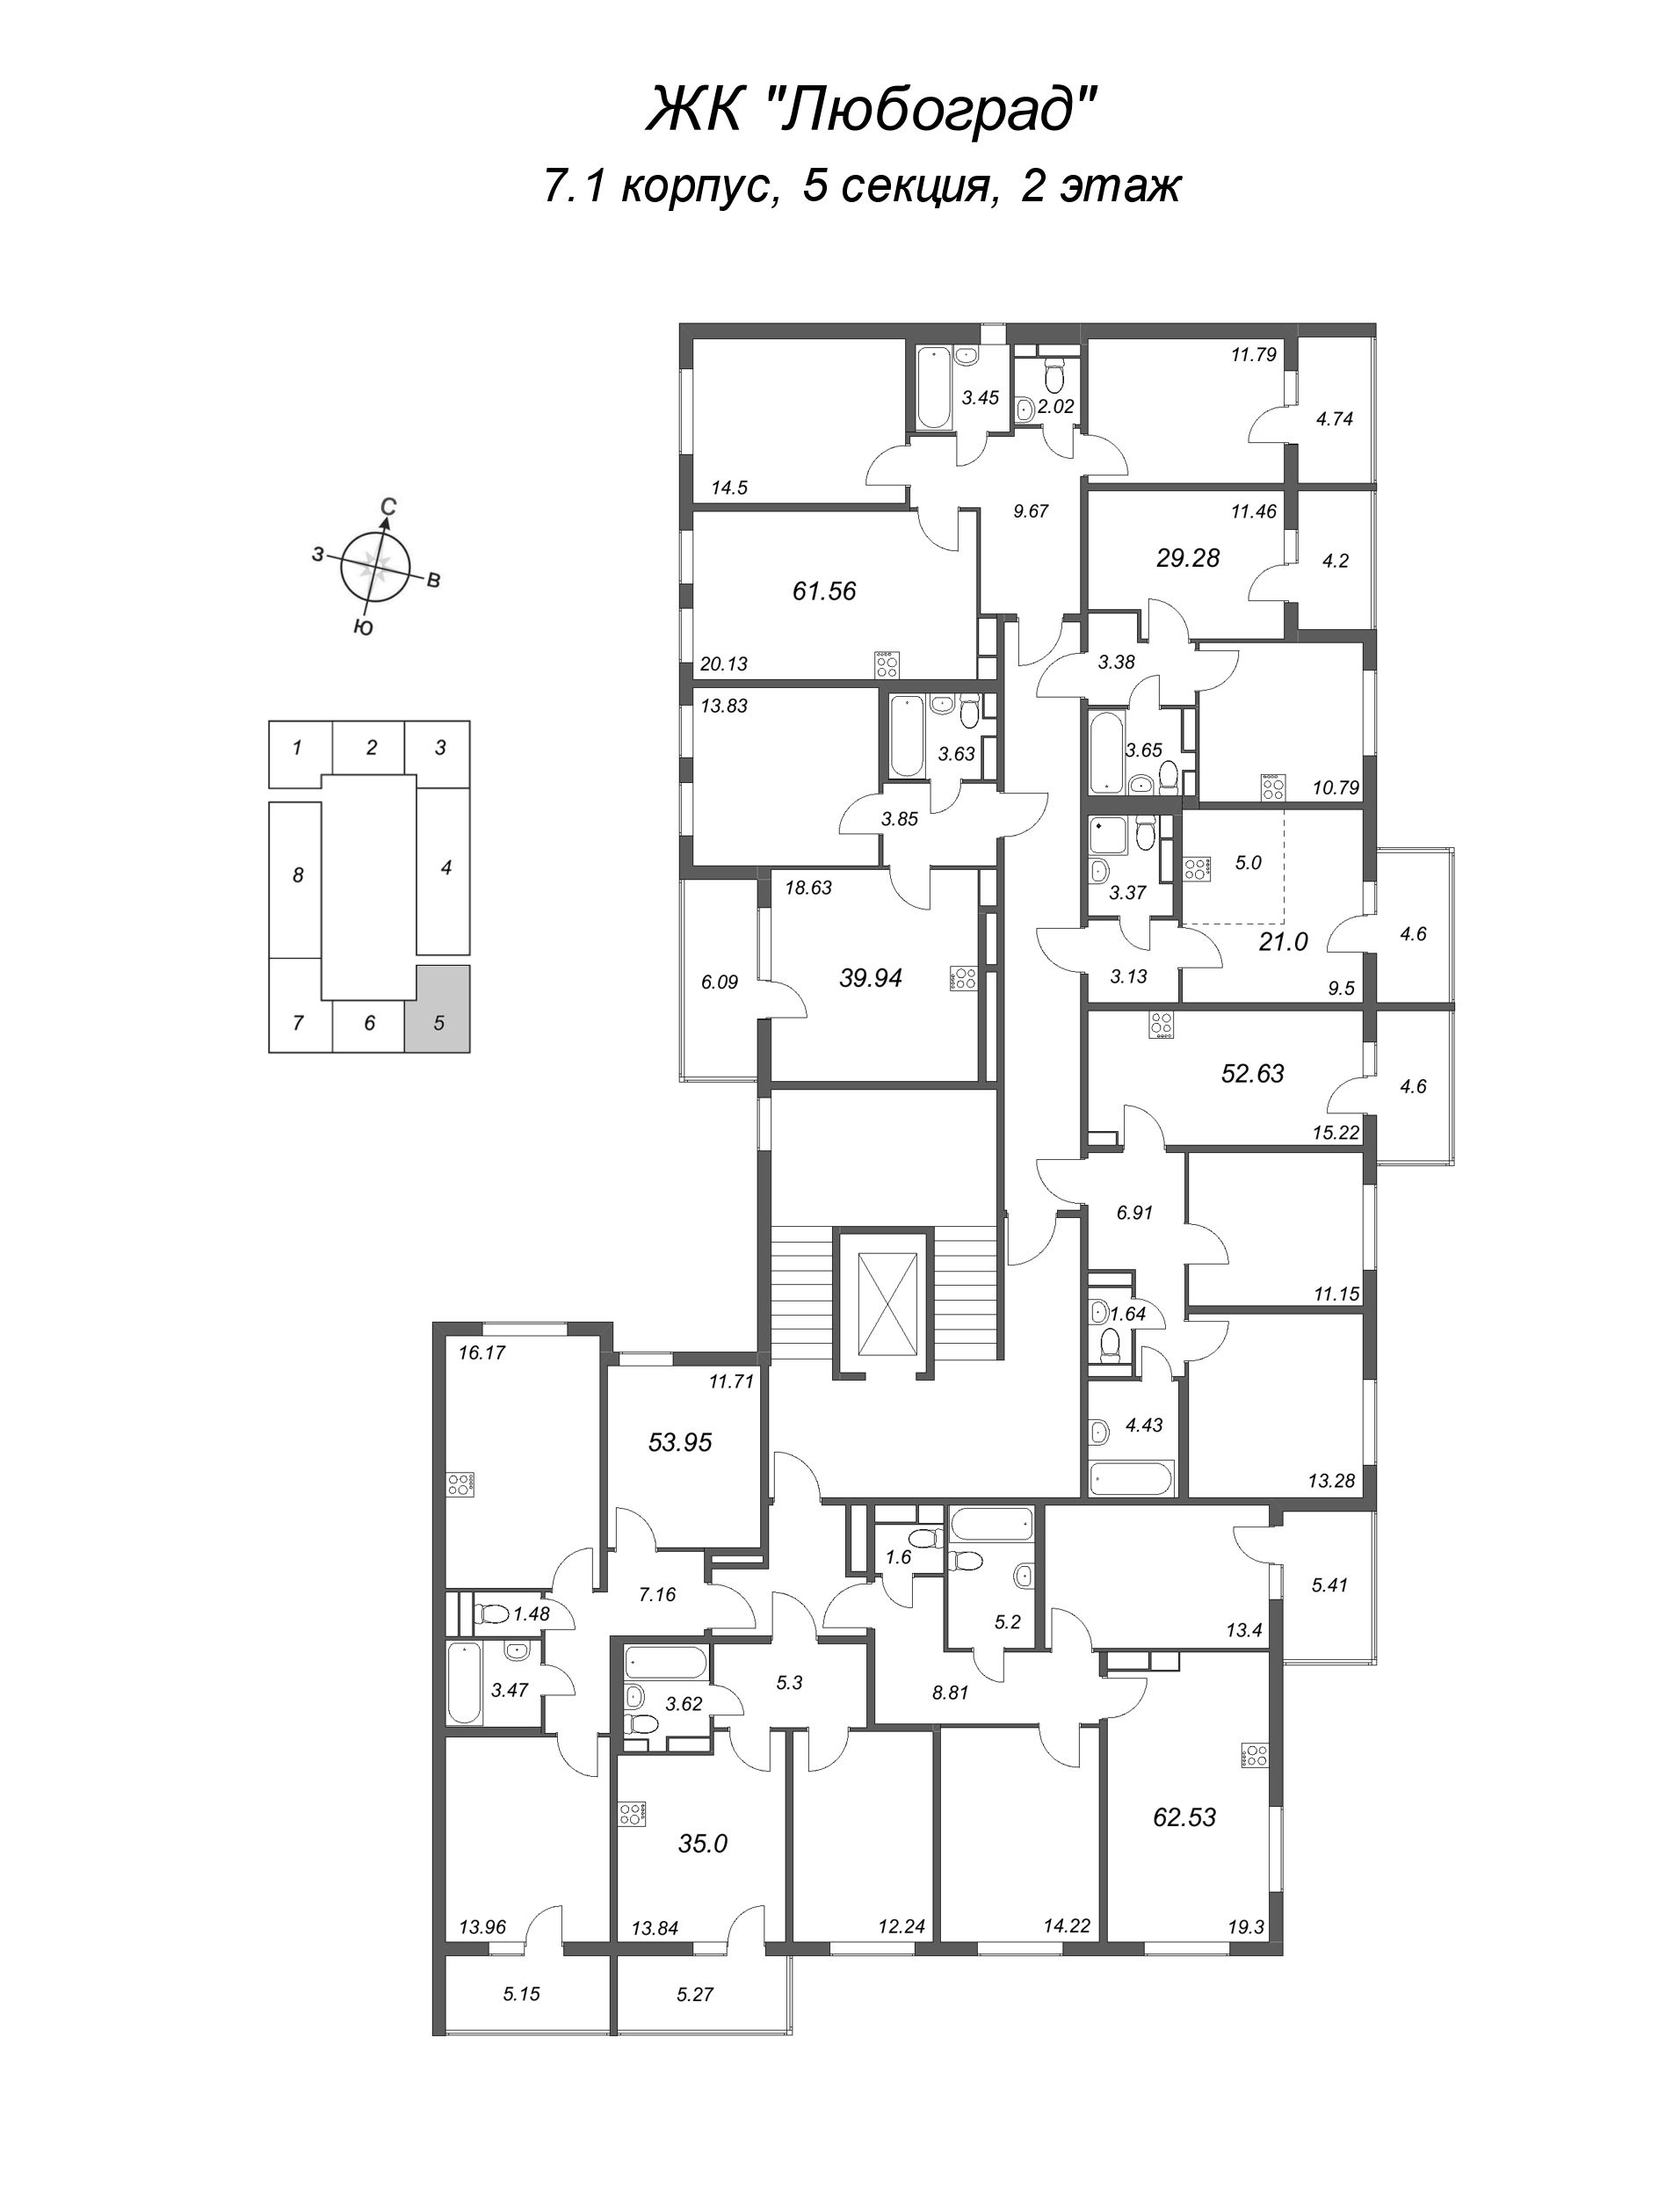 3-комнатная (Евро) квартира, 52.63 м² в ЖК "Любоград" - планировка этажа